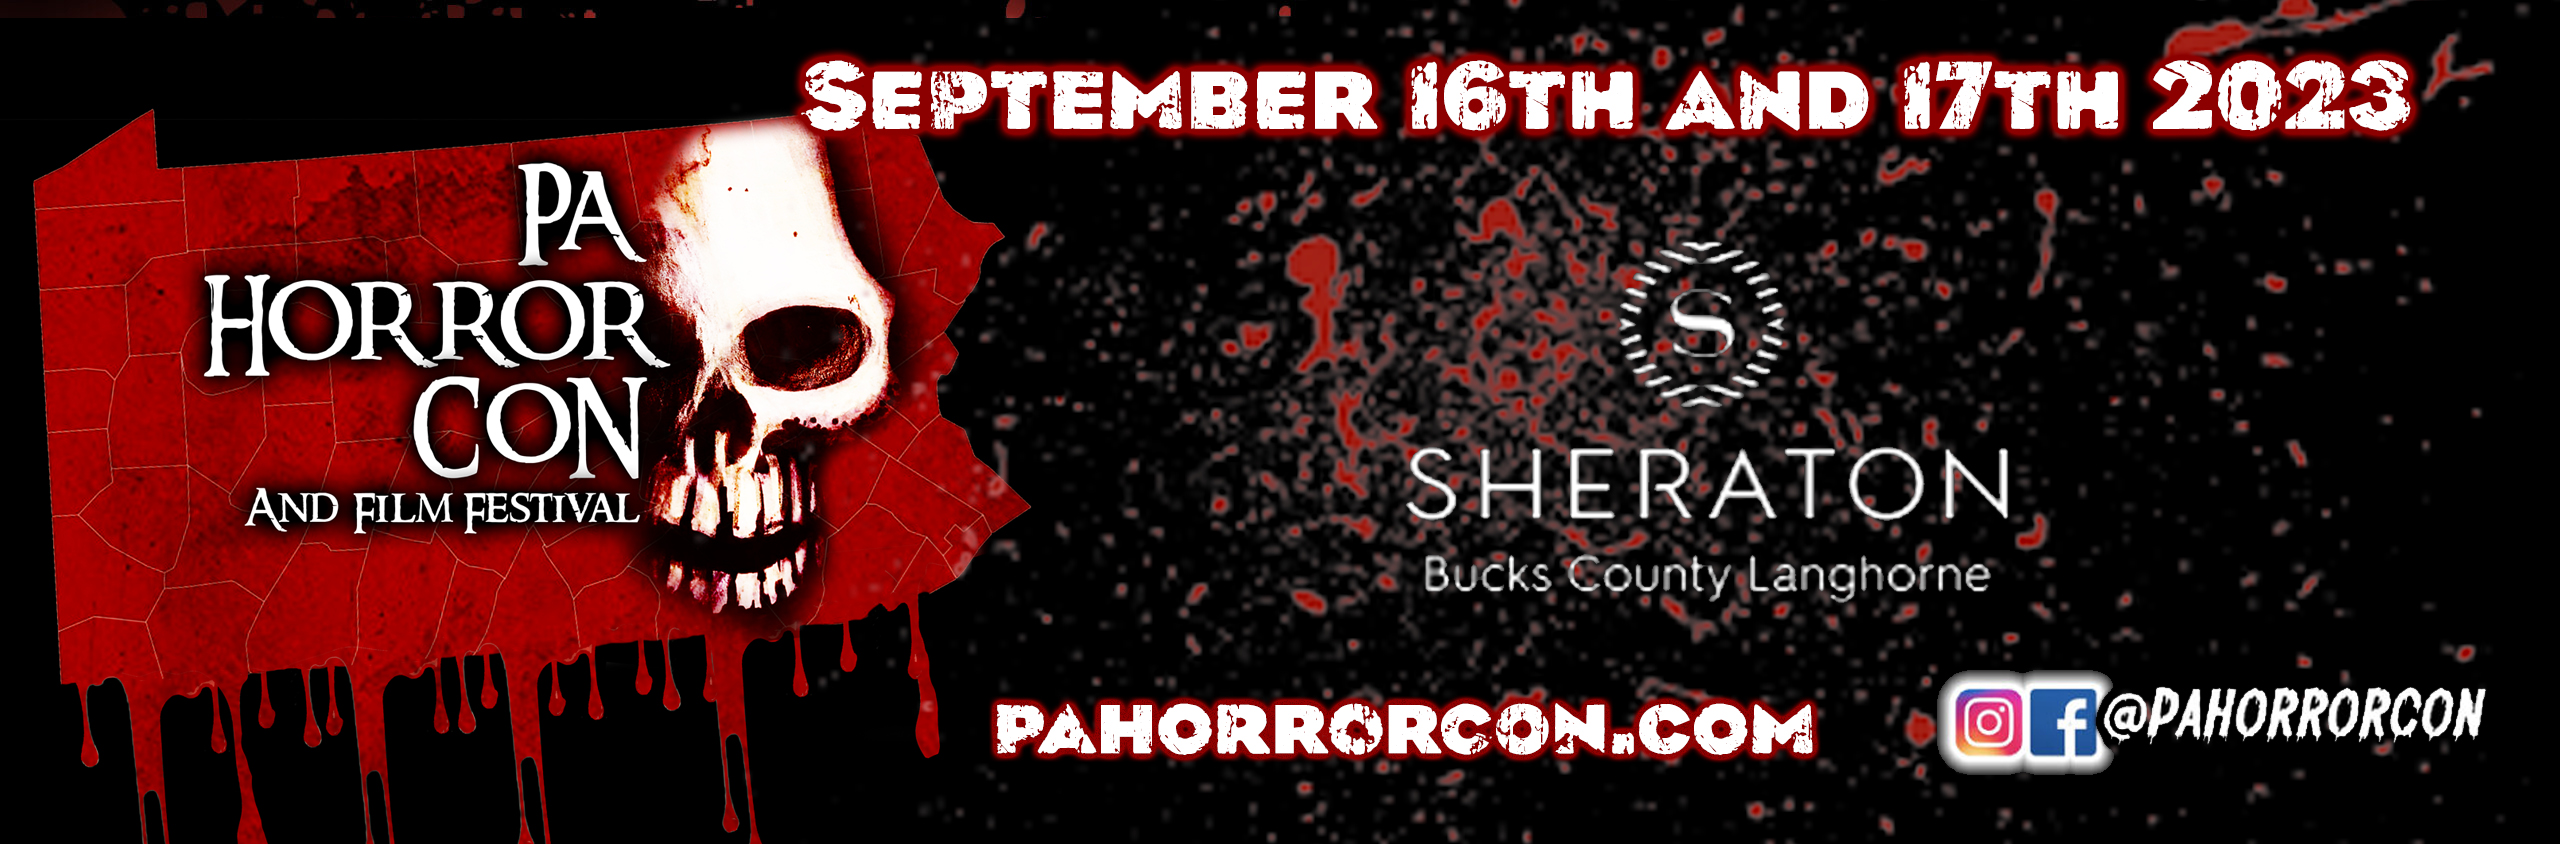 PA Horror Con and Film Festival